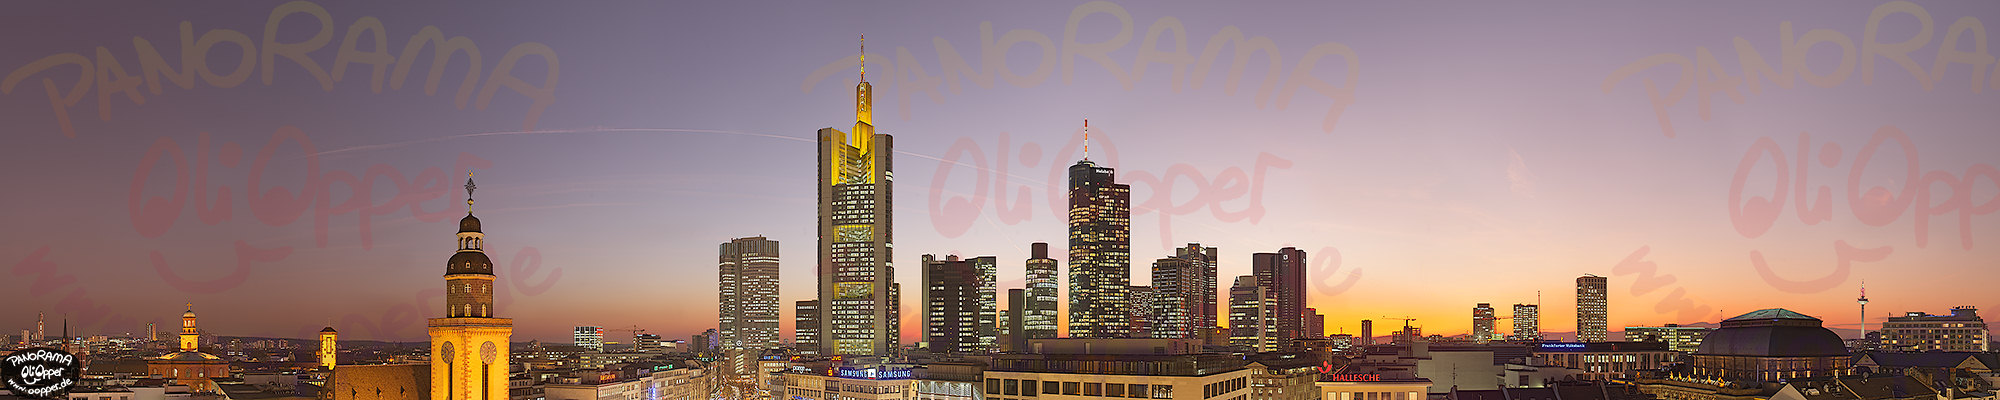 Frankfurt - p261 - (c) by Oliver Opper